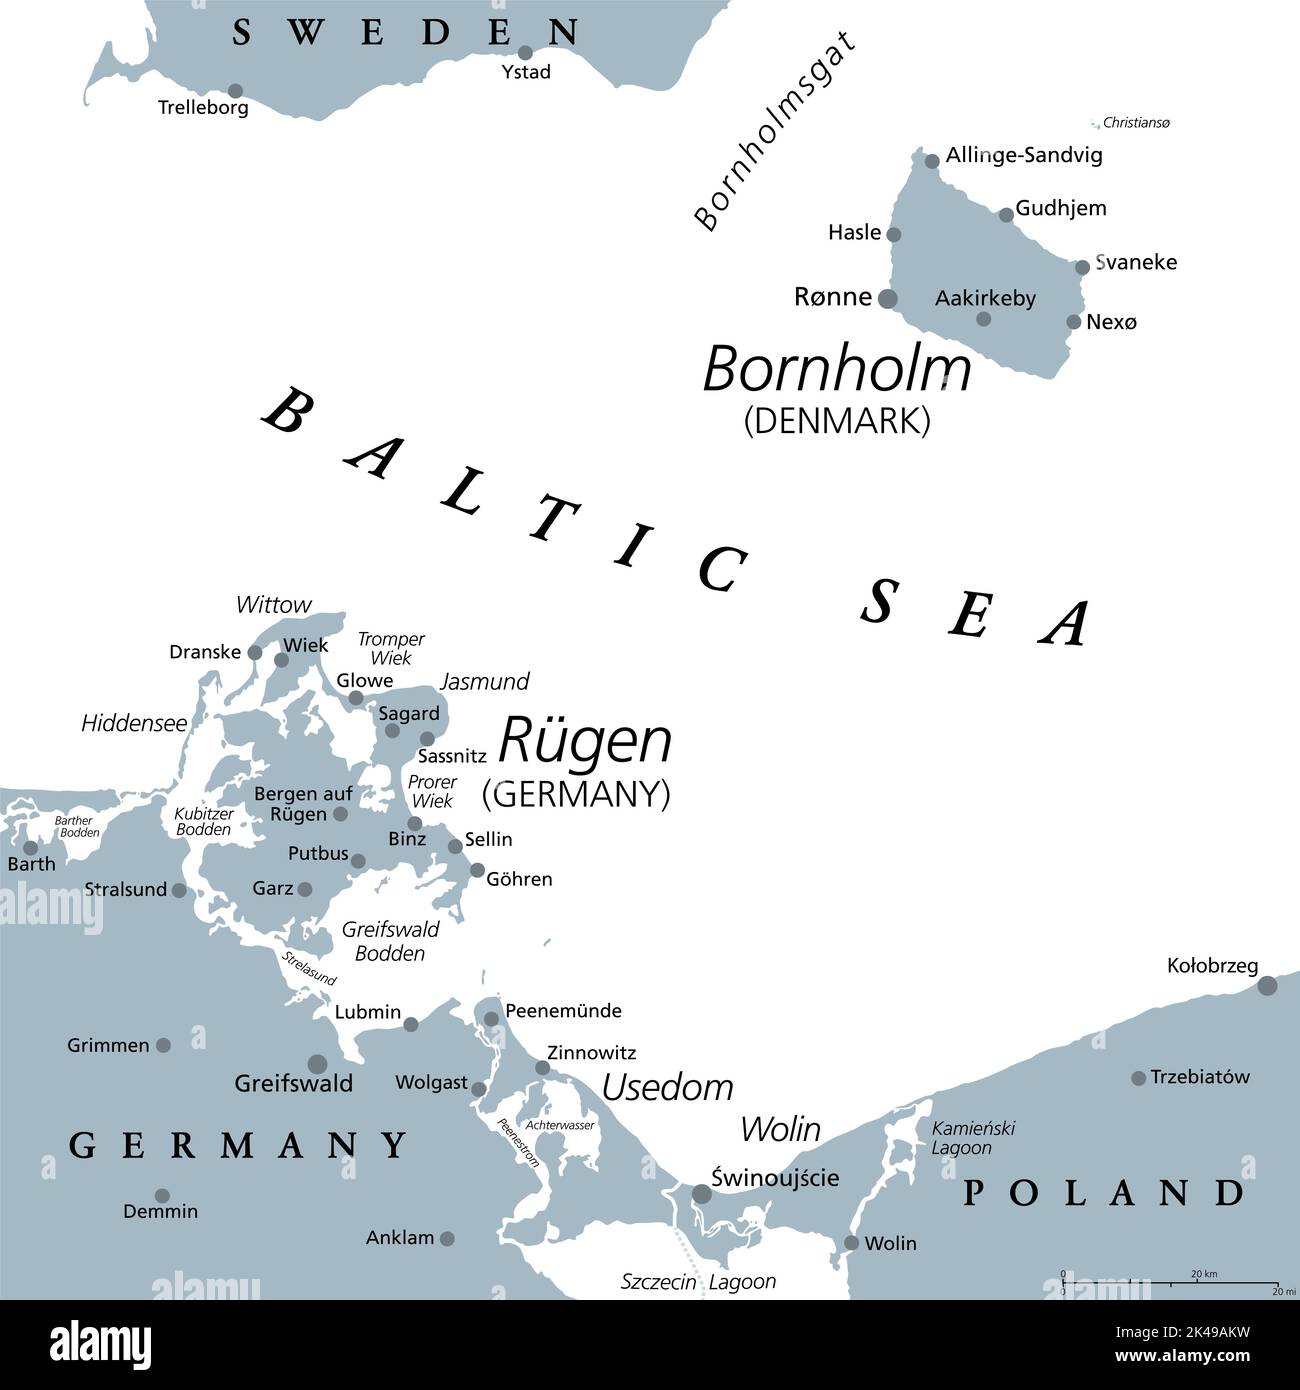 Dänische Insel Bornholm und Deutschlands größte Insel Rügen, graue politische Landkarte. Beide Inseln liegen in der südlichen Ostsee. Stockfoto